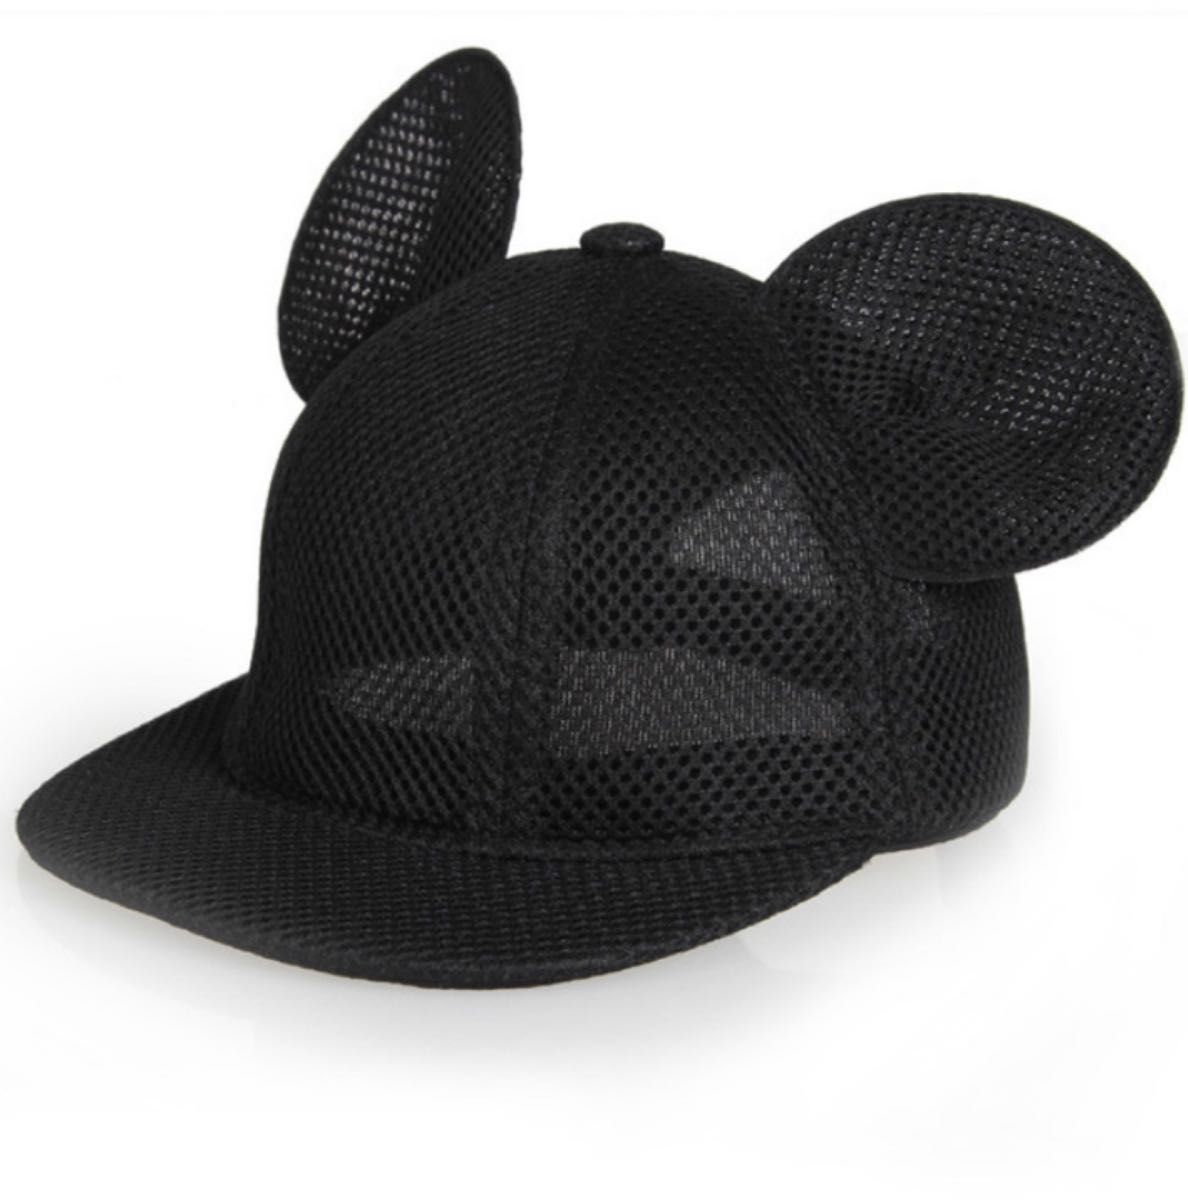 ハロウィン 仮装 お揃い コスプレ 帽子 メッシュ キャップ テーマパーク 黒